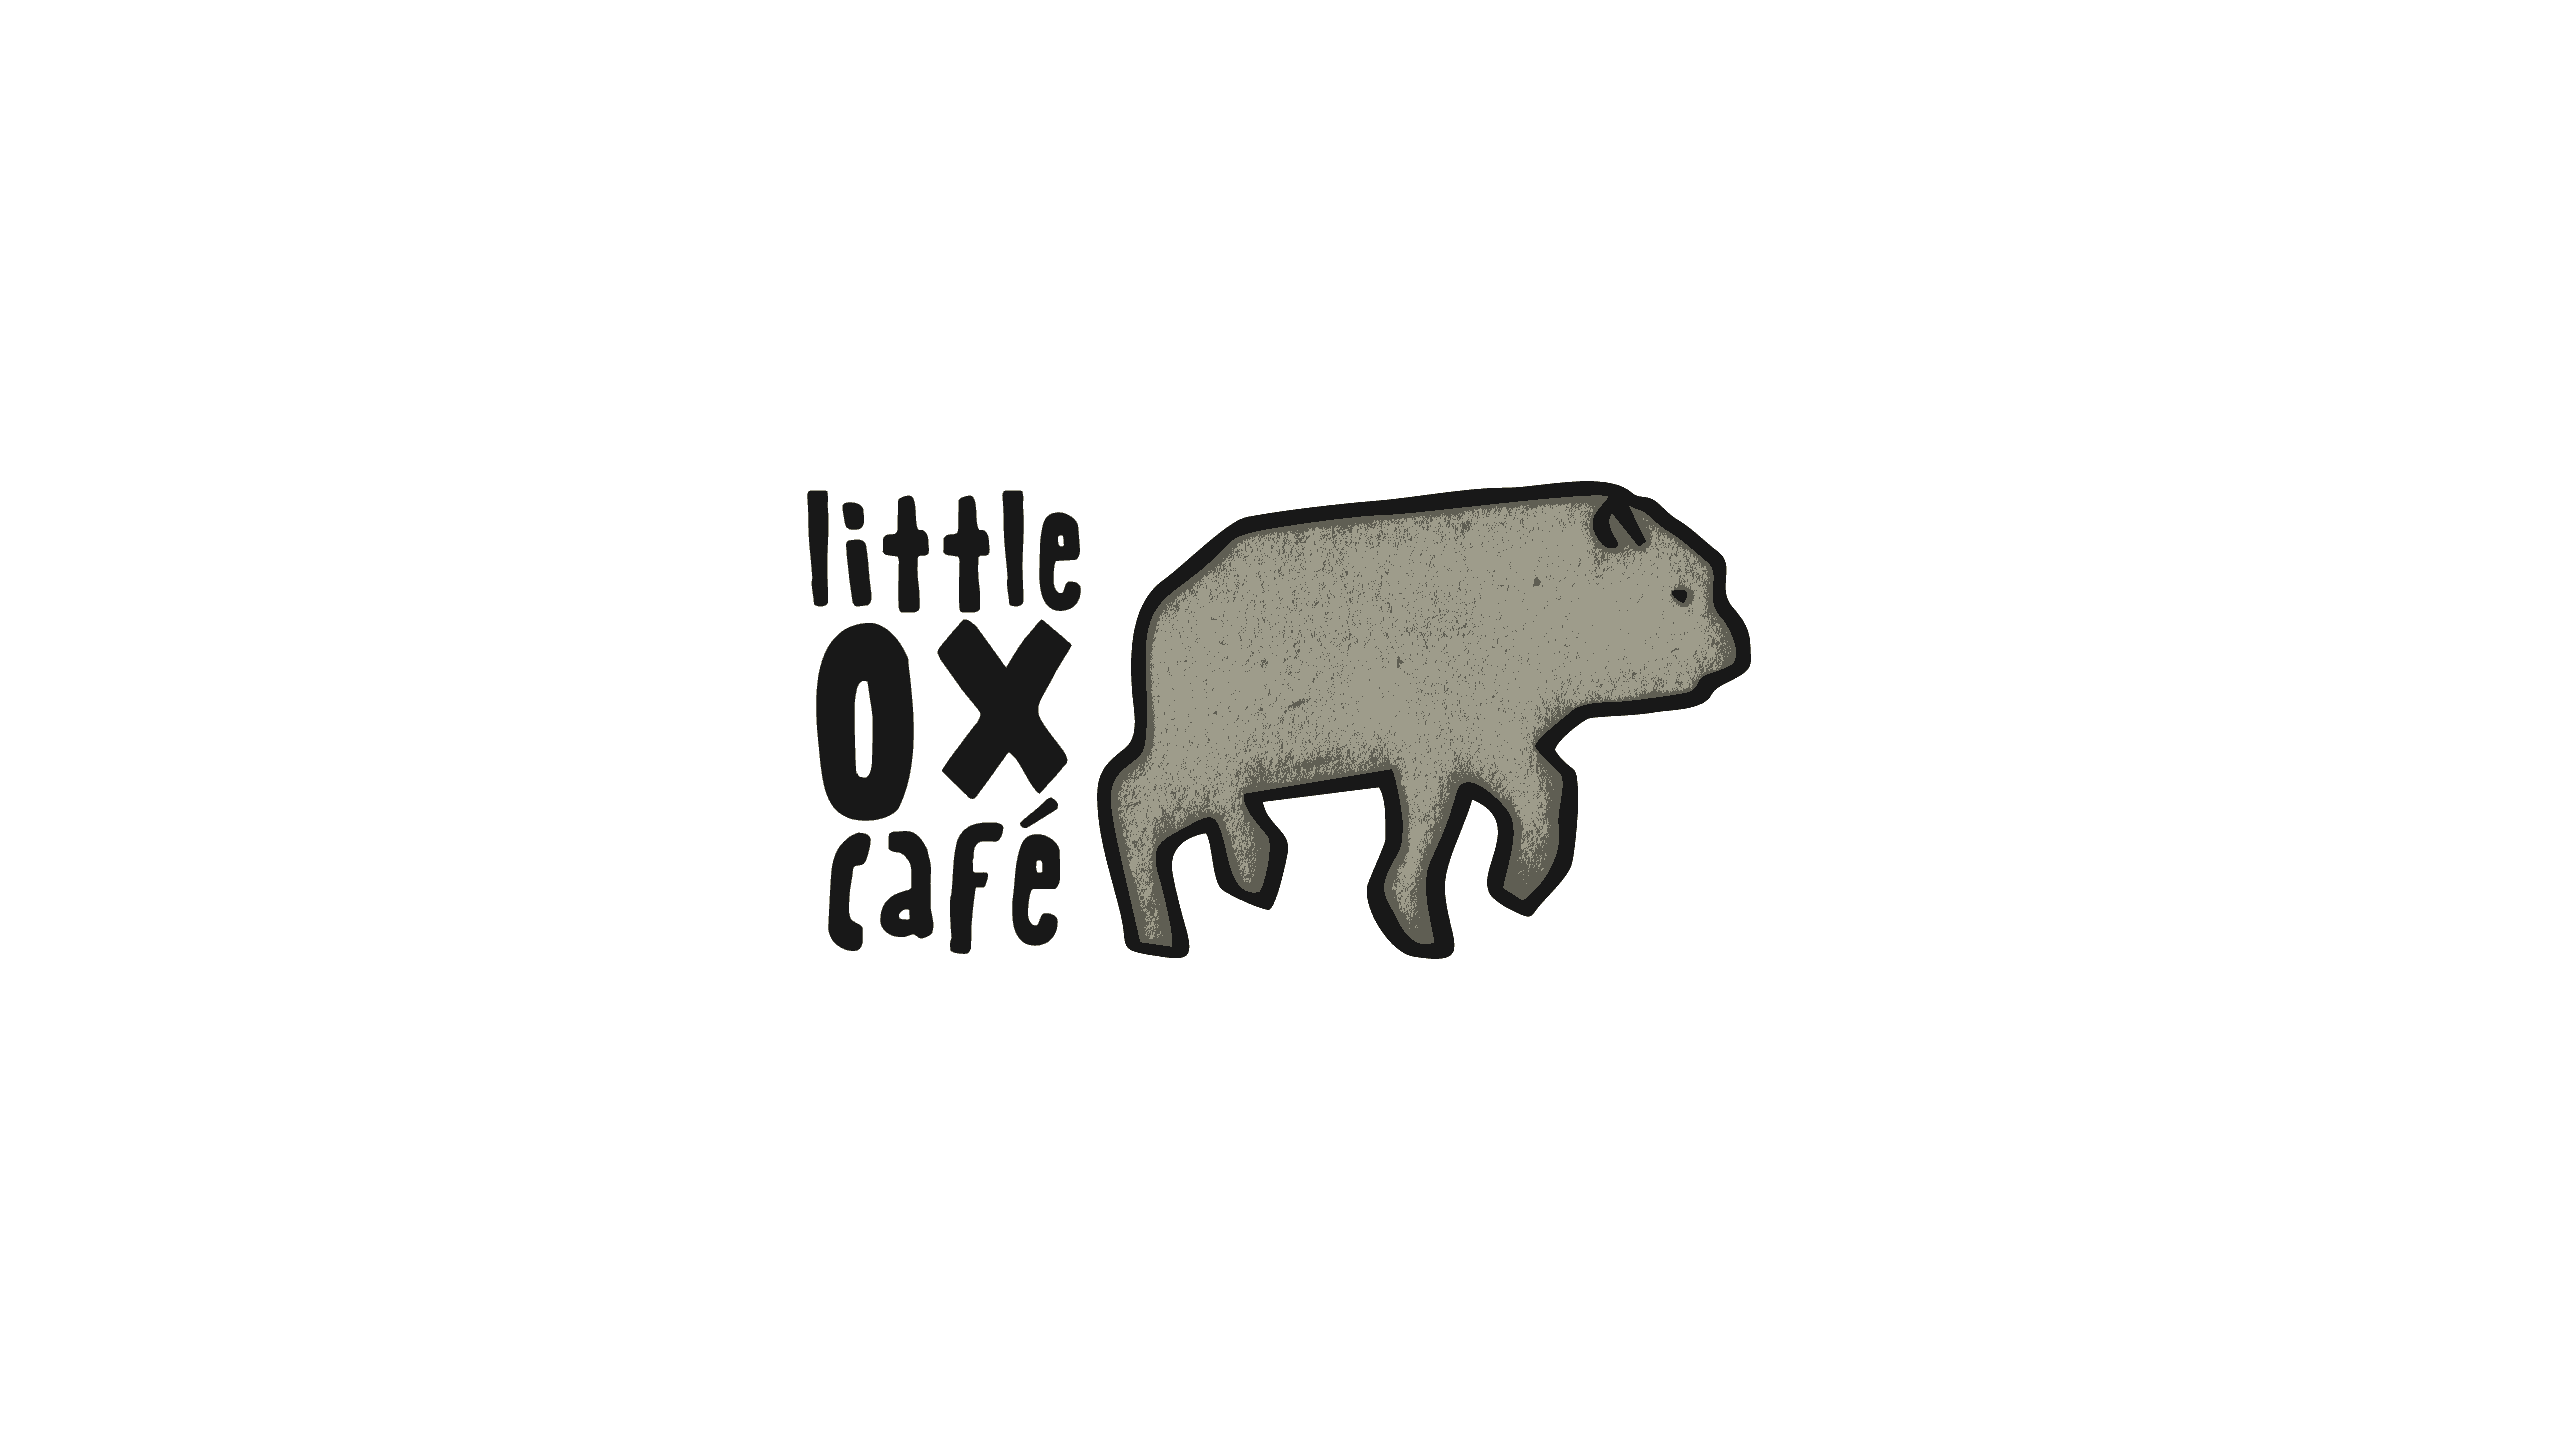 Little ox café